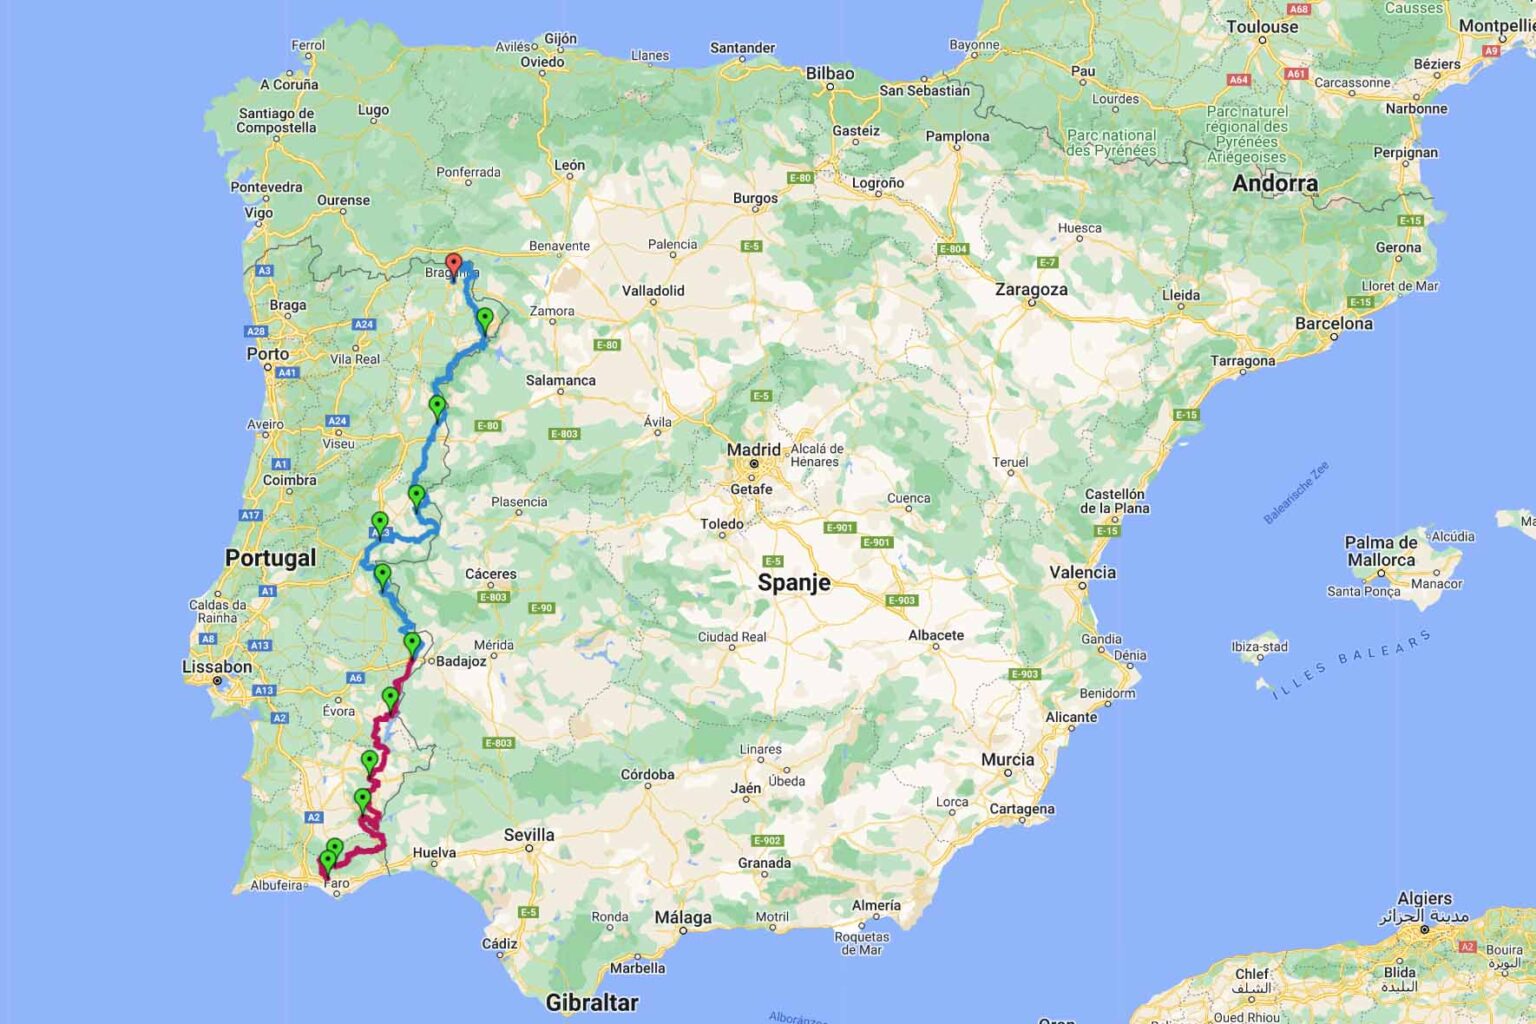 4×4 roadbook Portugal langs de Spaanse grens. Deel 2 is de blauwe lijn.